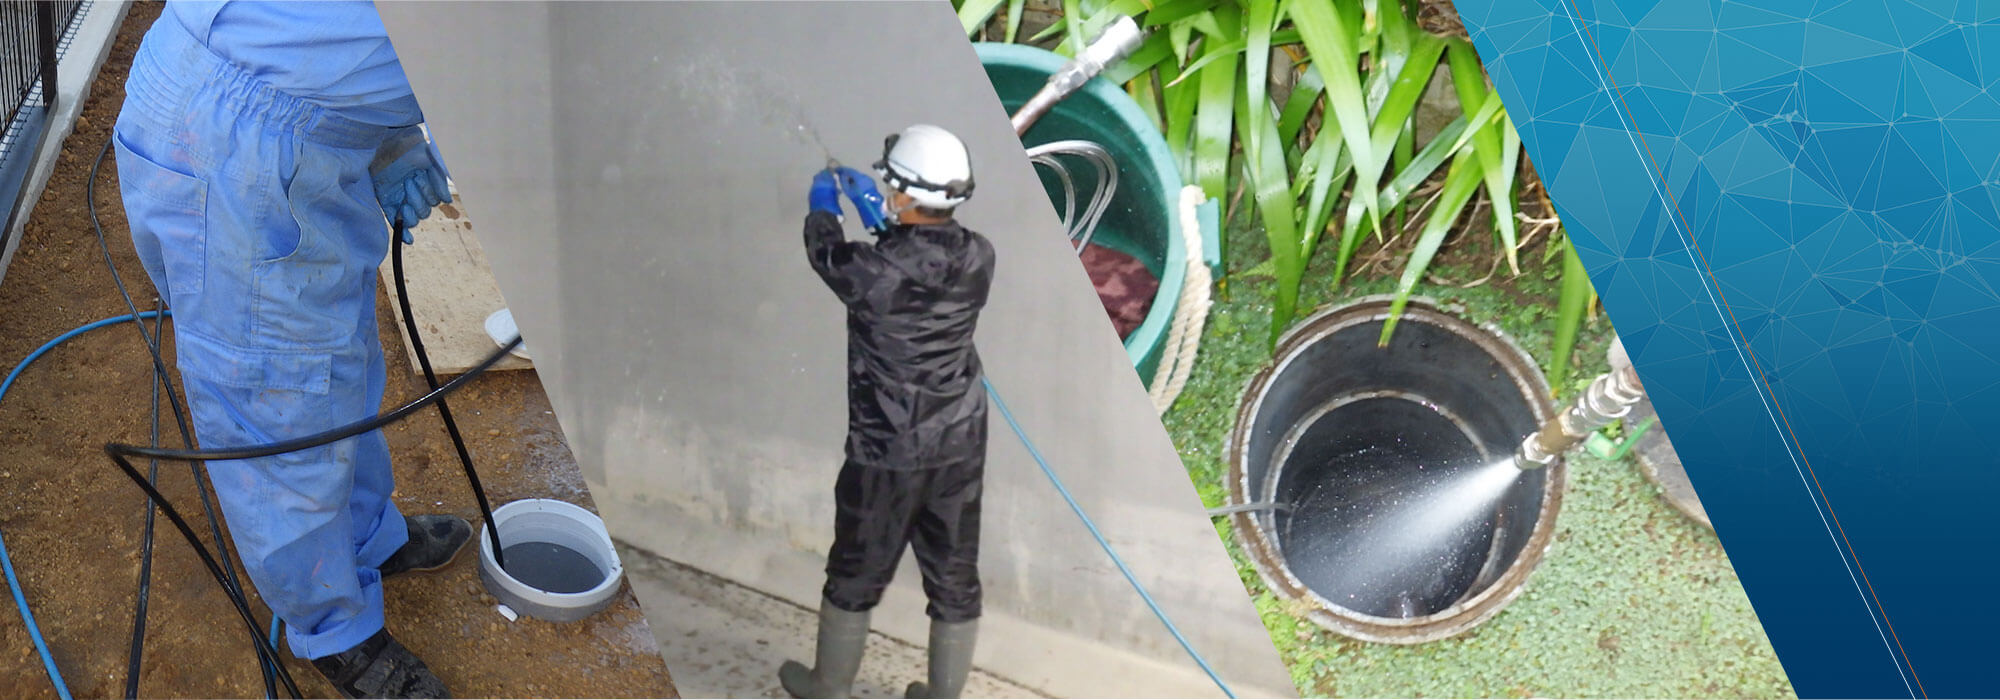 千葉県の排水管清掃・給水管バブル洗浄・高圧洗浄・貯水槽清掃・管工事、日本高圧洗浄株式会社